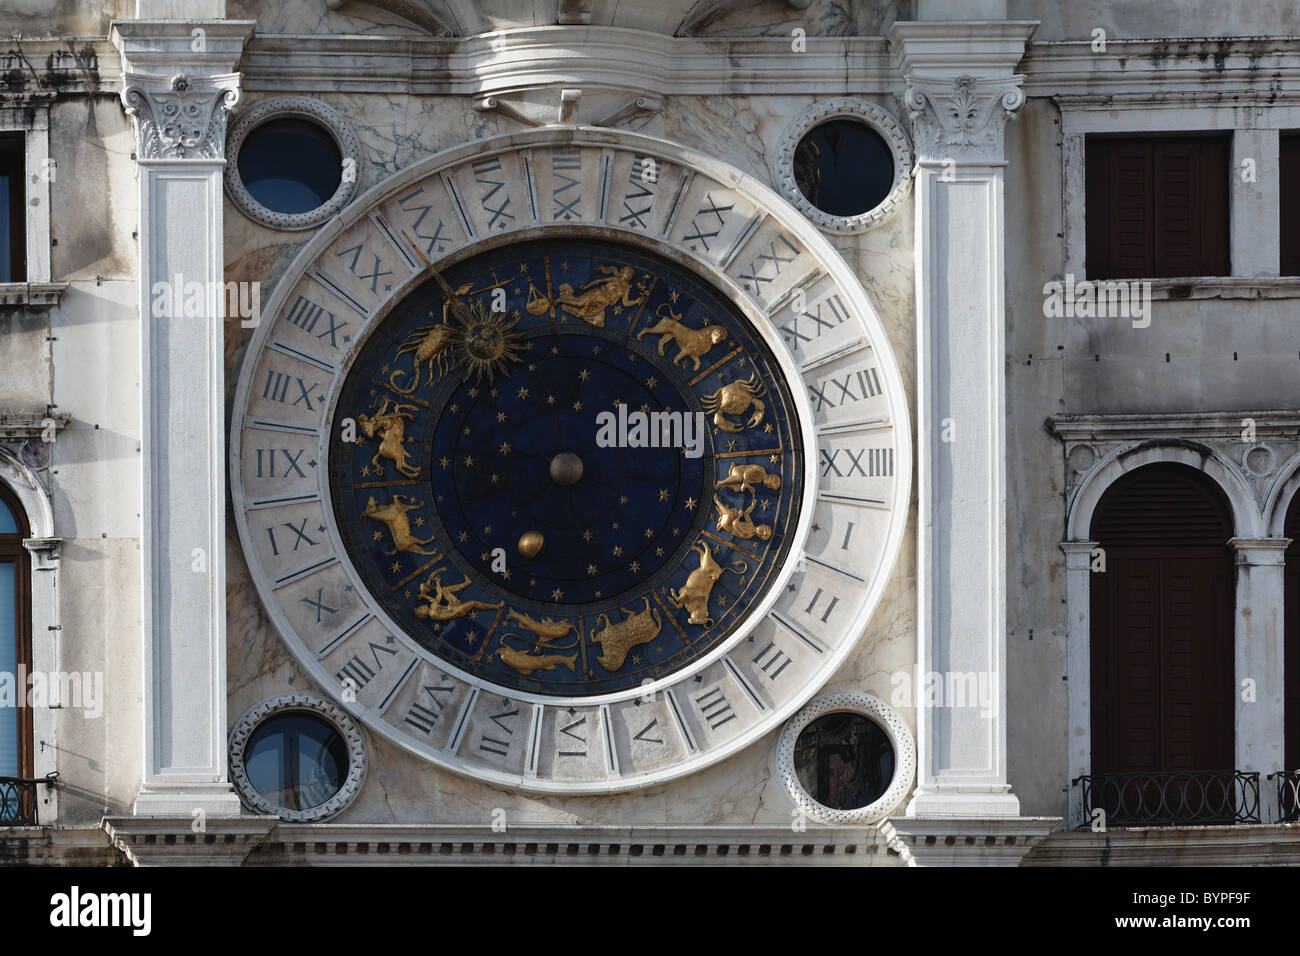 Vue rapprochée de l'horloge de la tour de l'horloge, Venise, Italie Banque D'Images